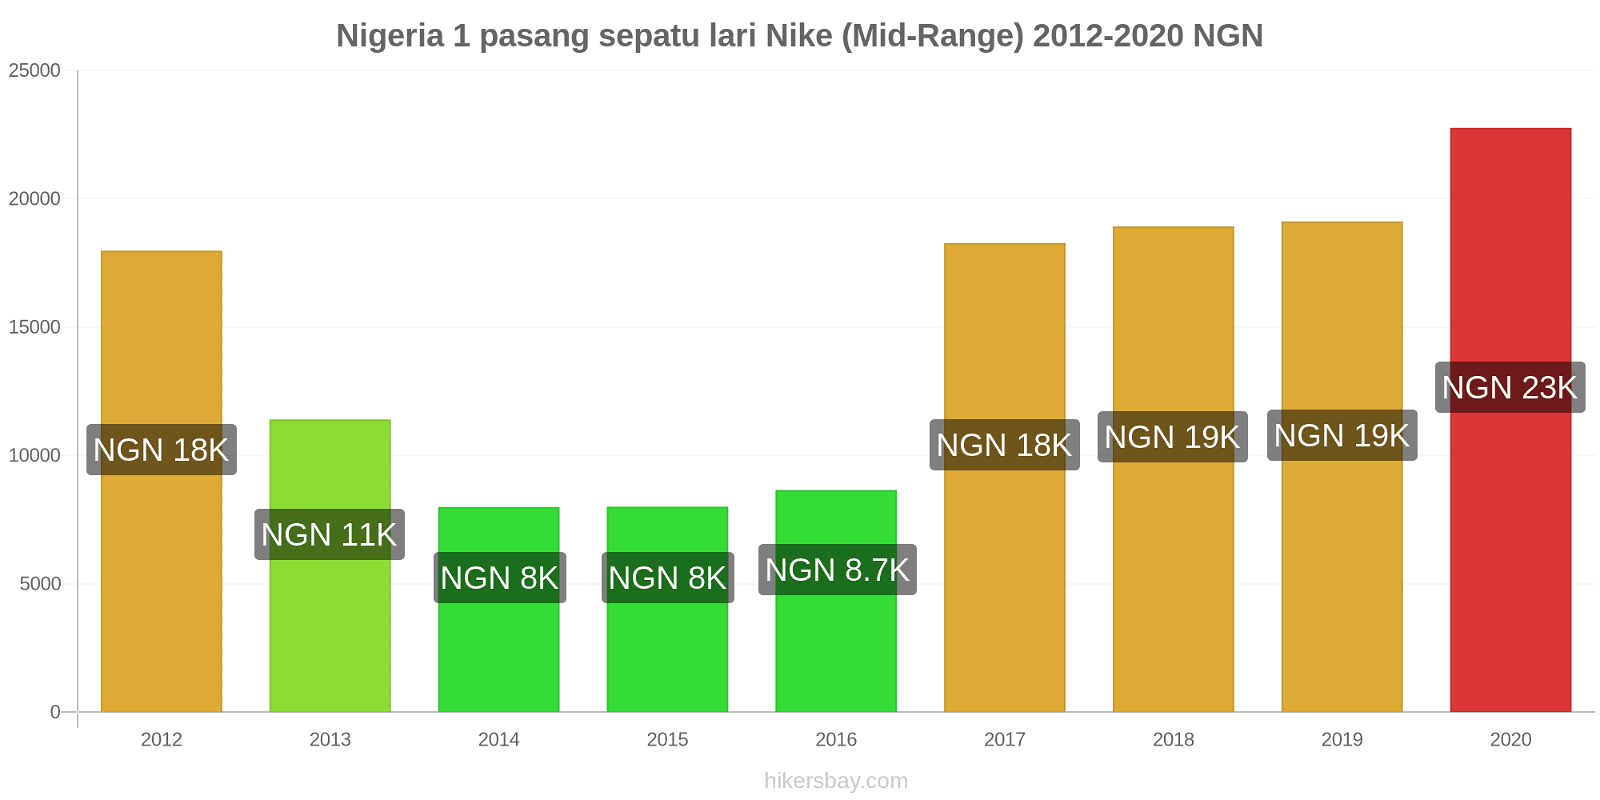 Nigeria perubahan harga 1 pasang sepatu lari Nike (Mid-Range) hikersbay.com